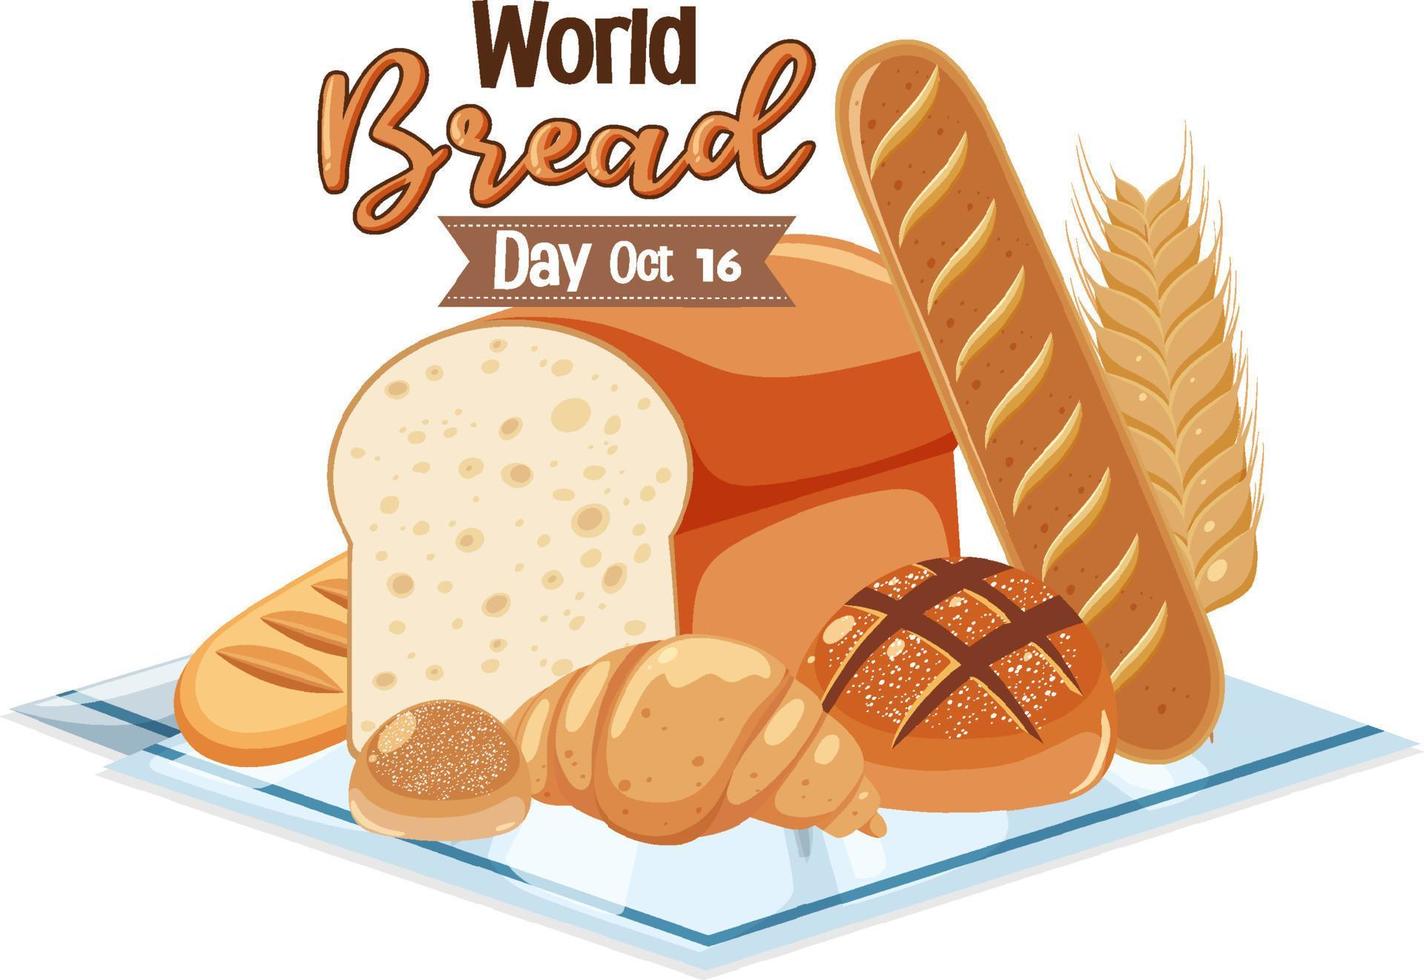 design de banner do dia mundial do pão vetor